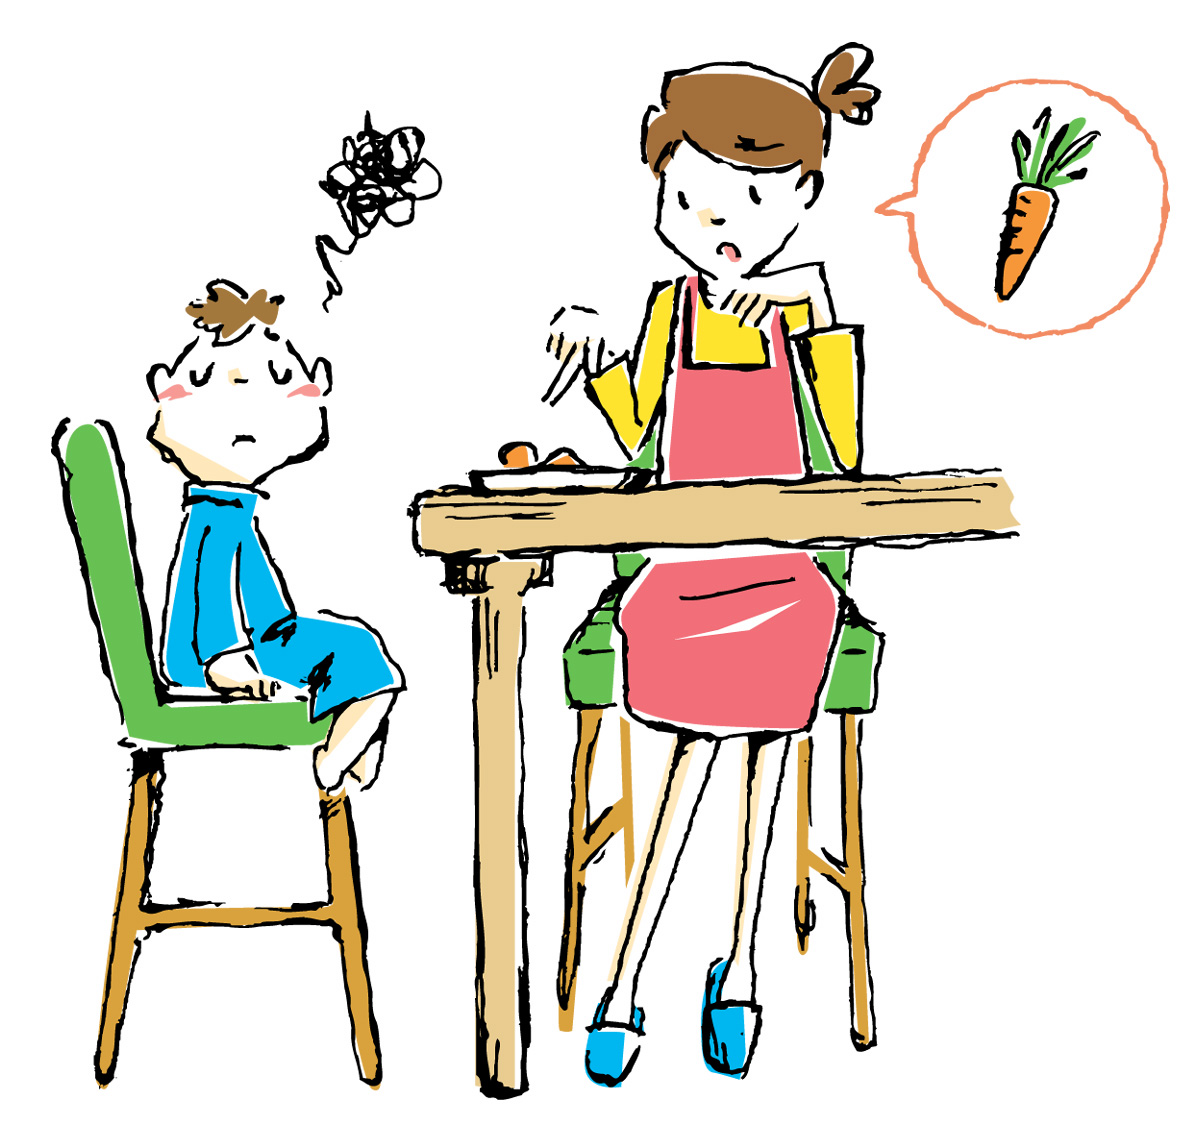 【12月10日】野菜ソムリエに子どもの食事相談ができます。お困りのことは何でも聞いてみよう！【近鉄草津店】